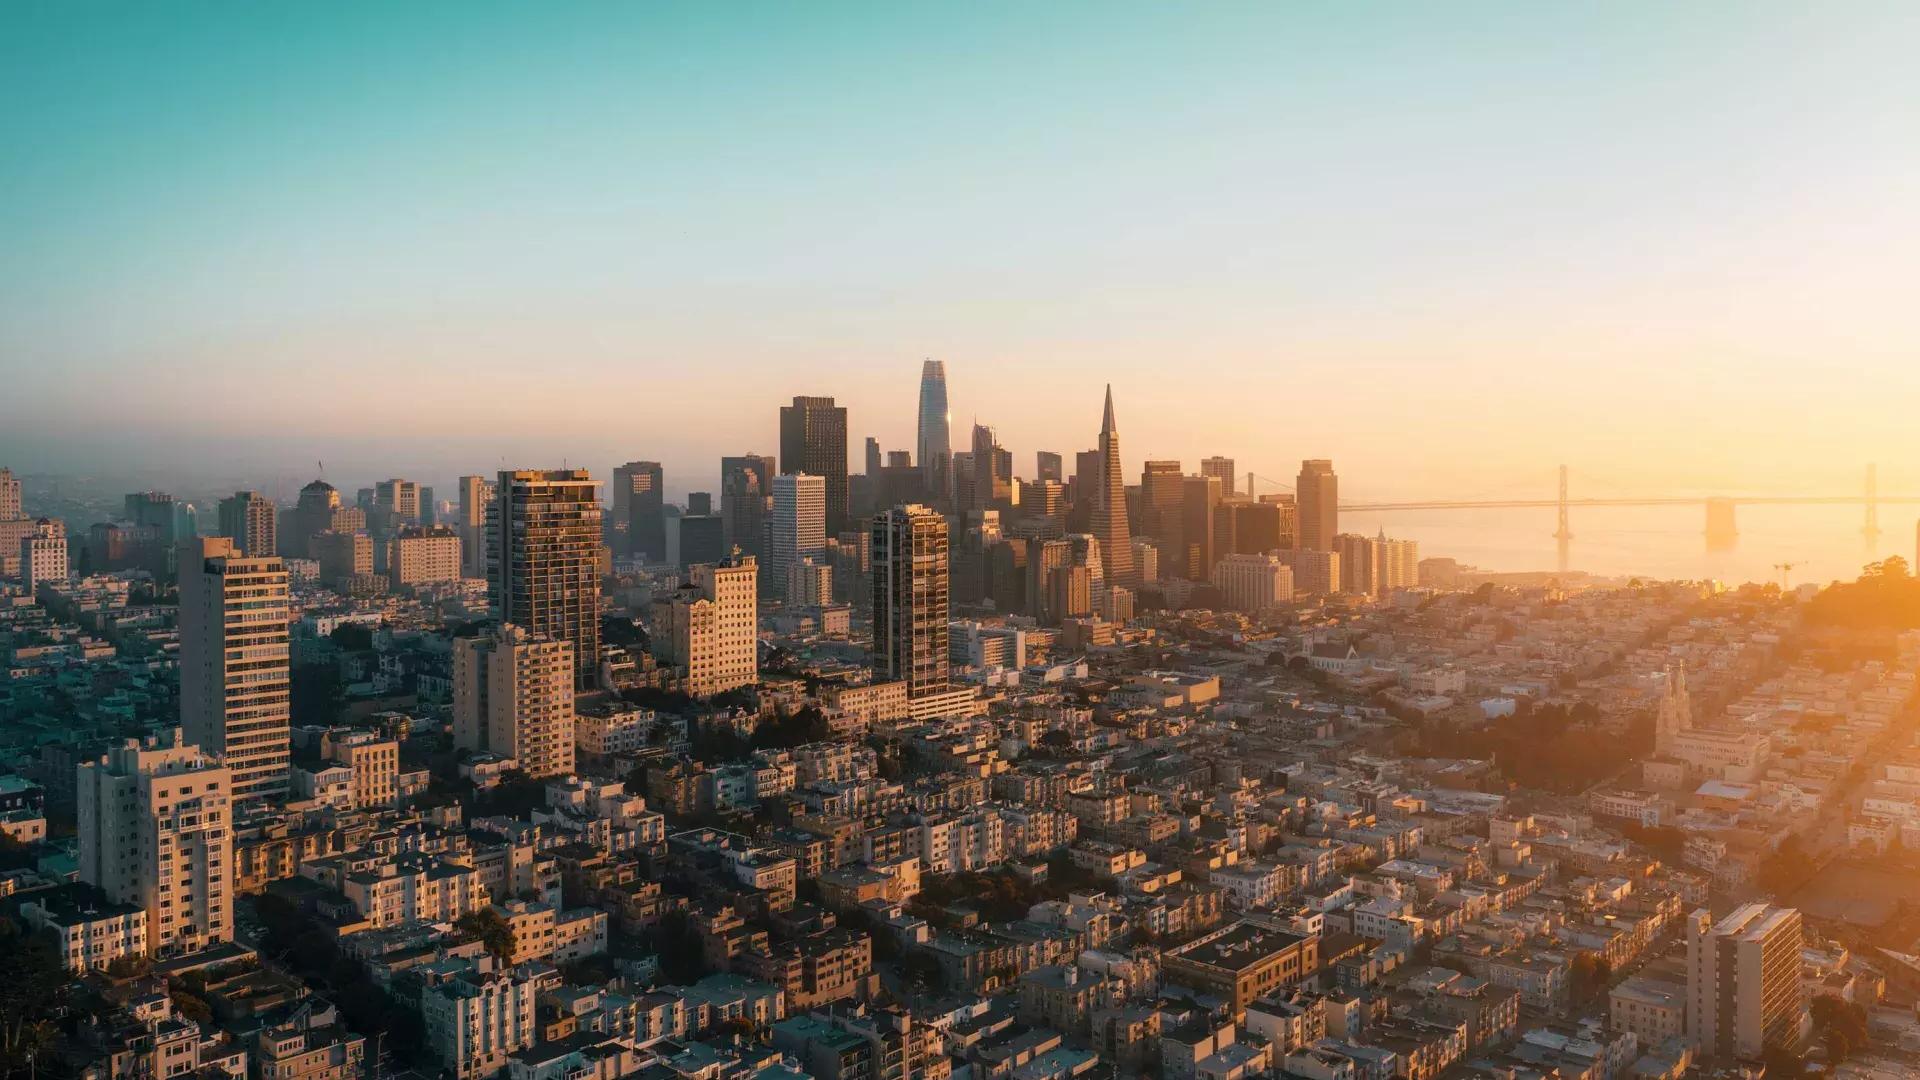 Die Skyline von San Francisco erscheint aus der Luft in einem goldenen Licht.